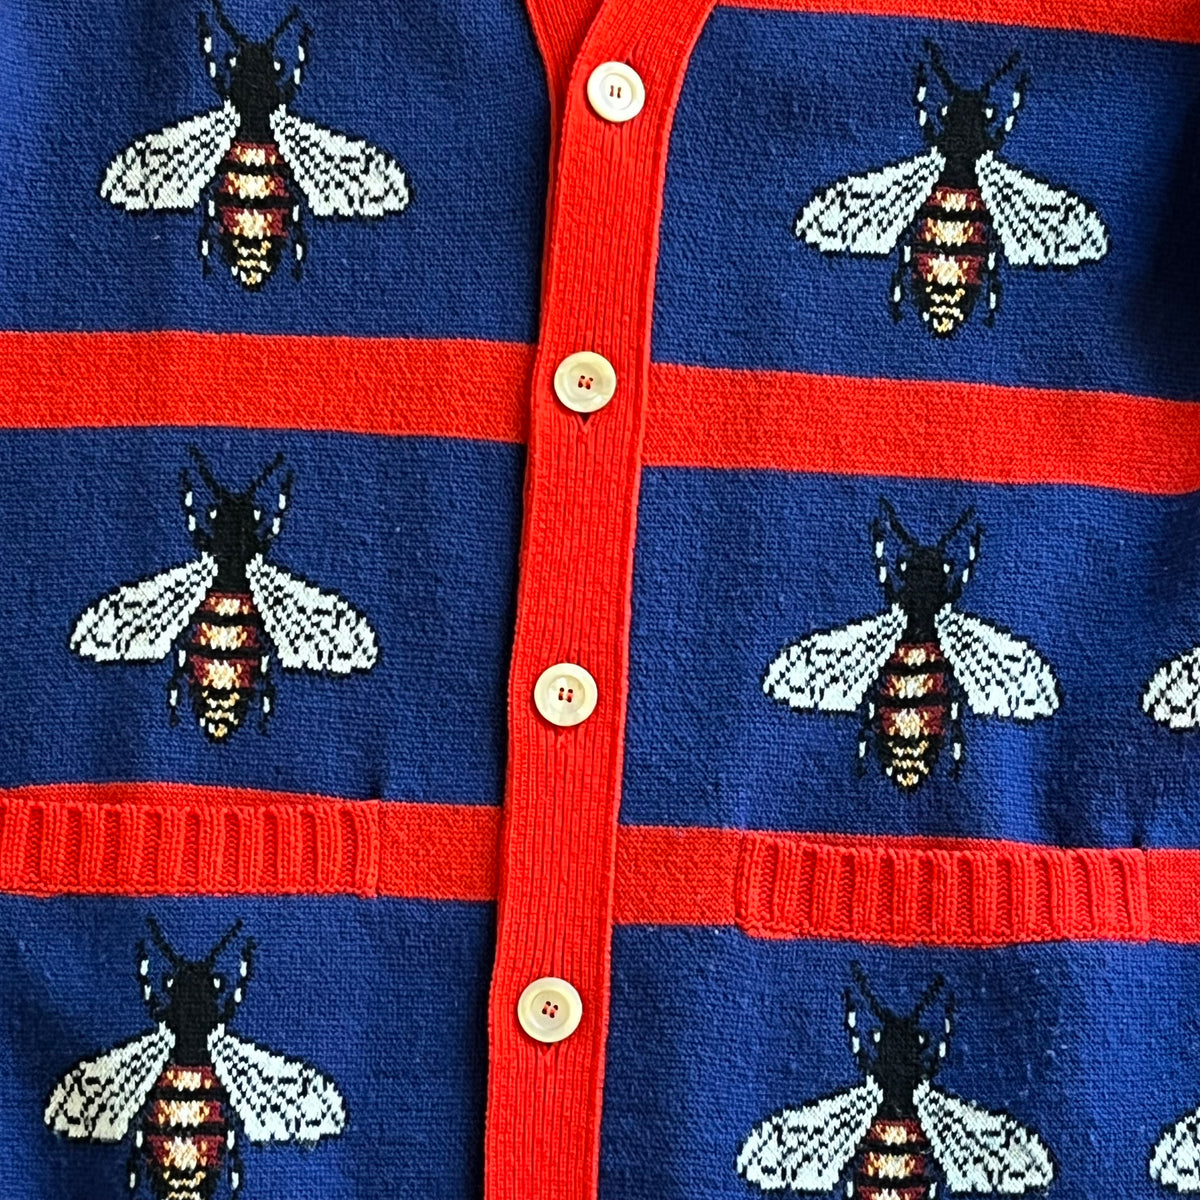 GUCCI Blue/Red Bee Jacquard Wool Cardigan SZ XL